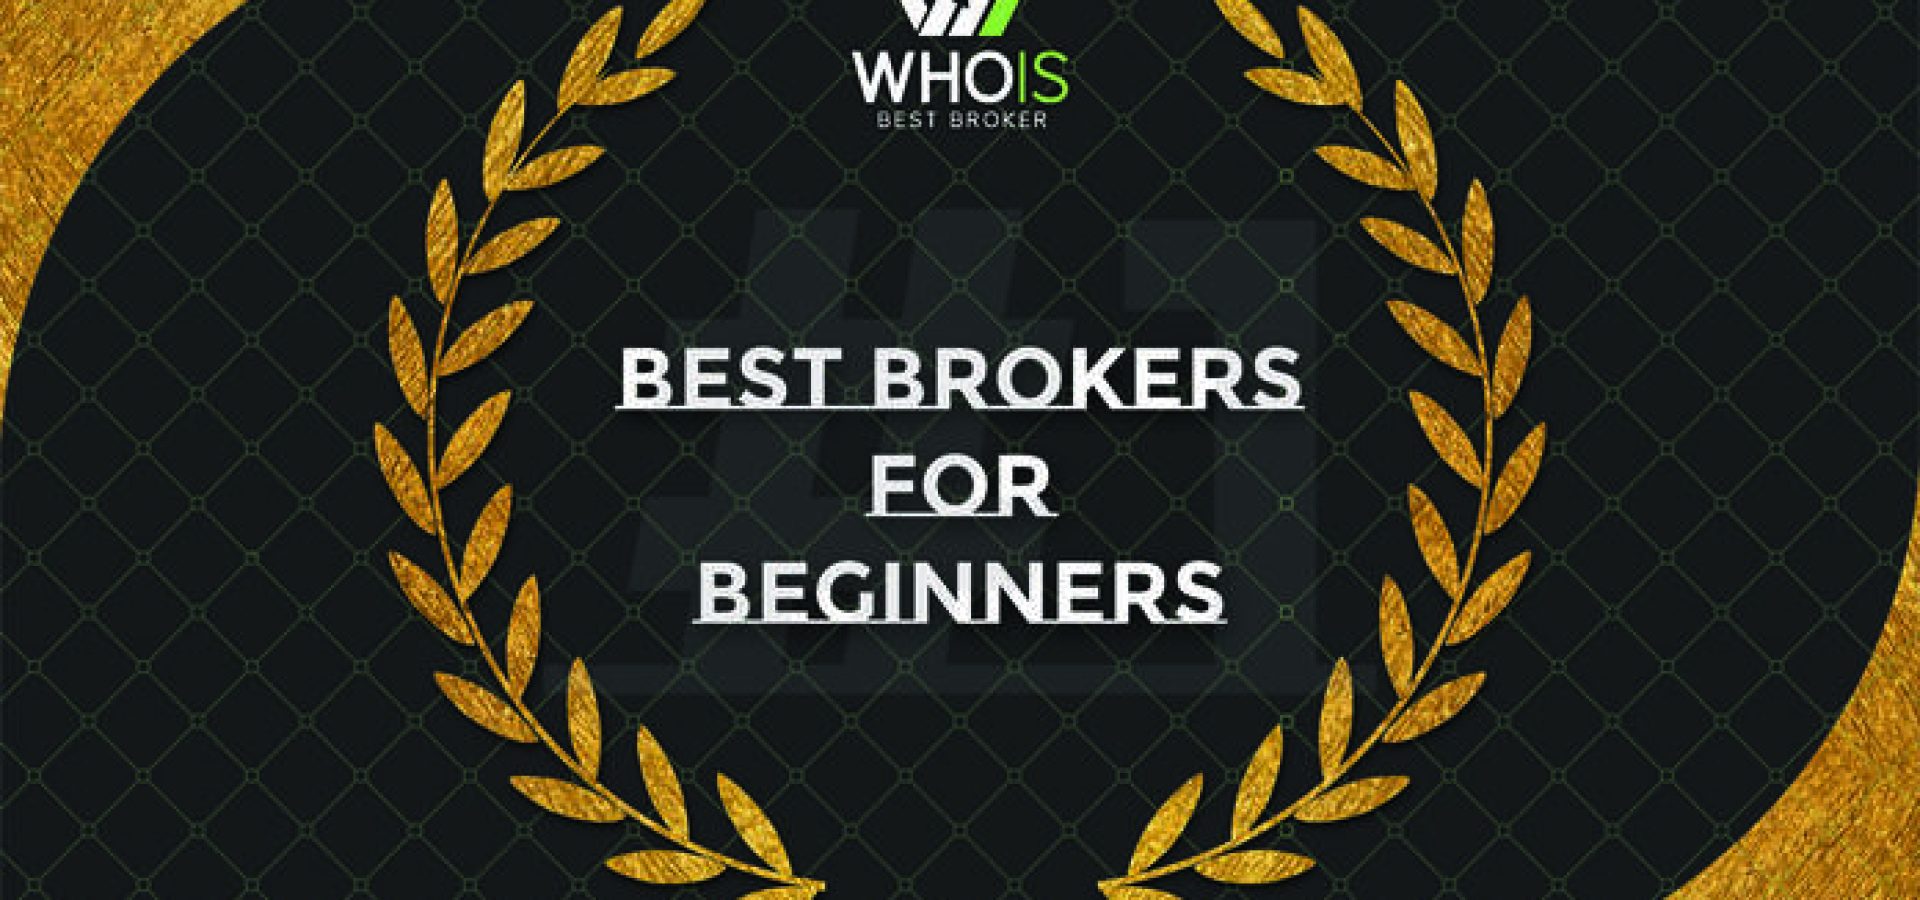 Best brokers for beginners